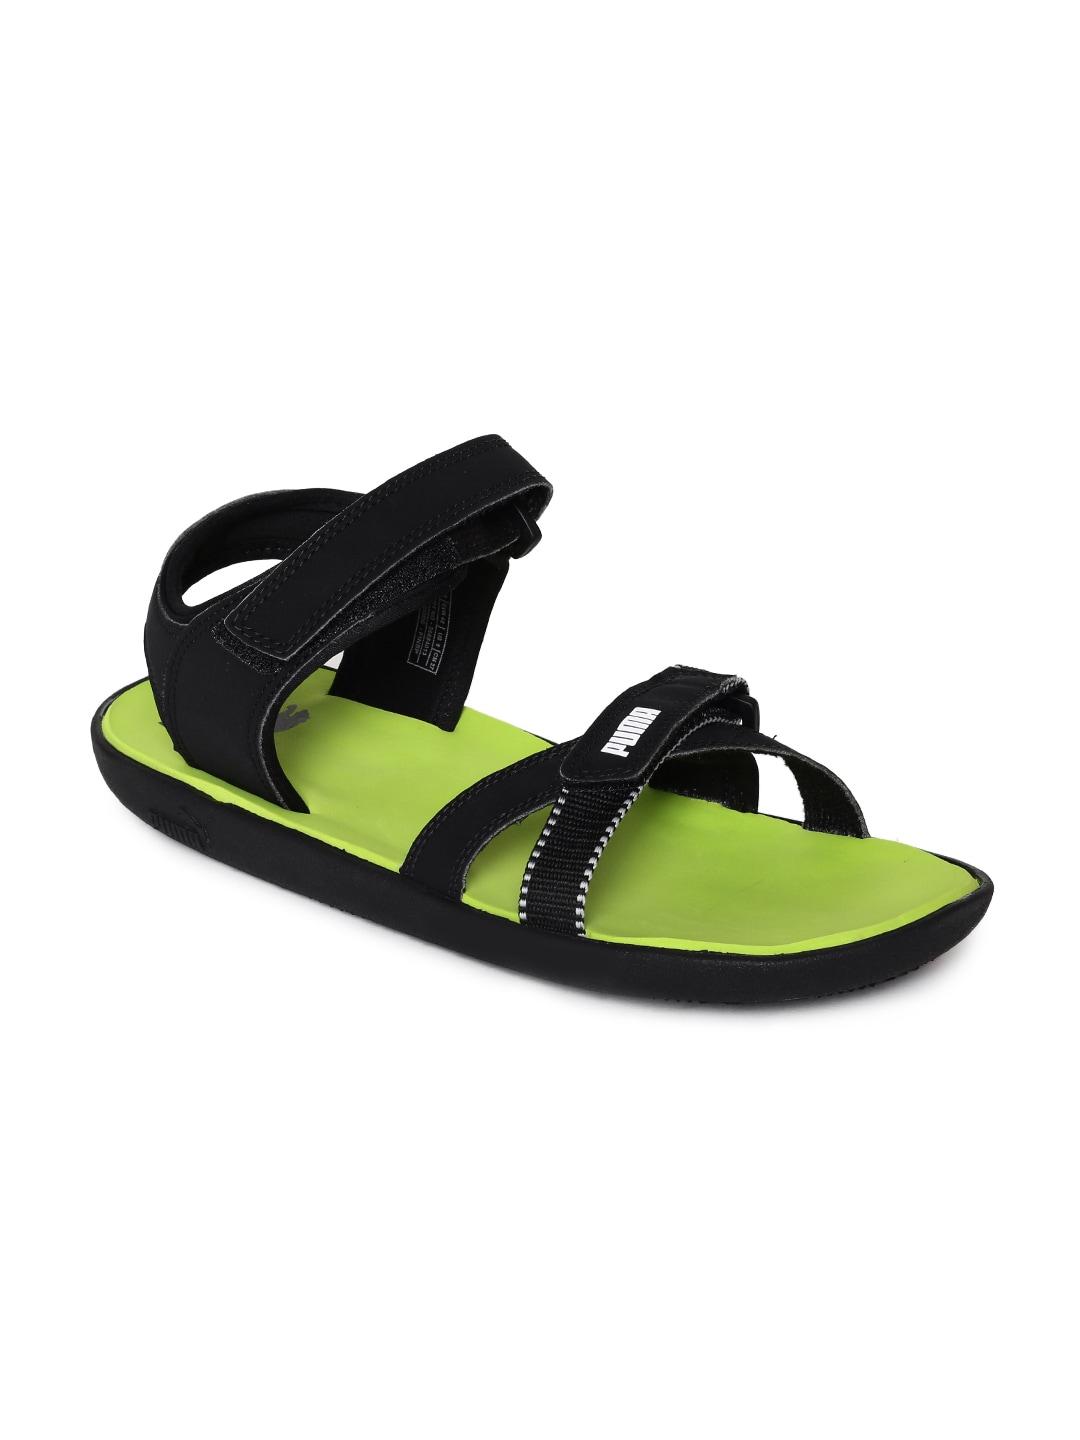 puma-men-black-pebble-sports-sandals